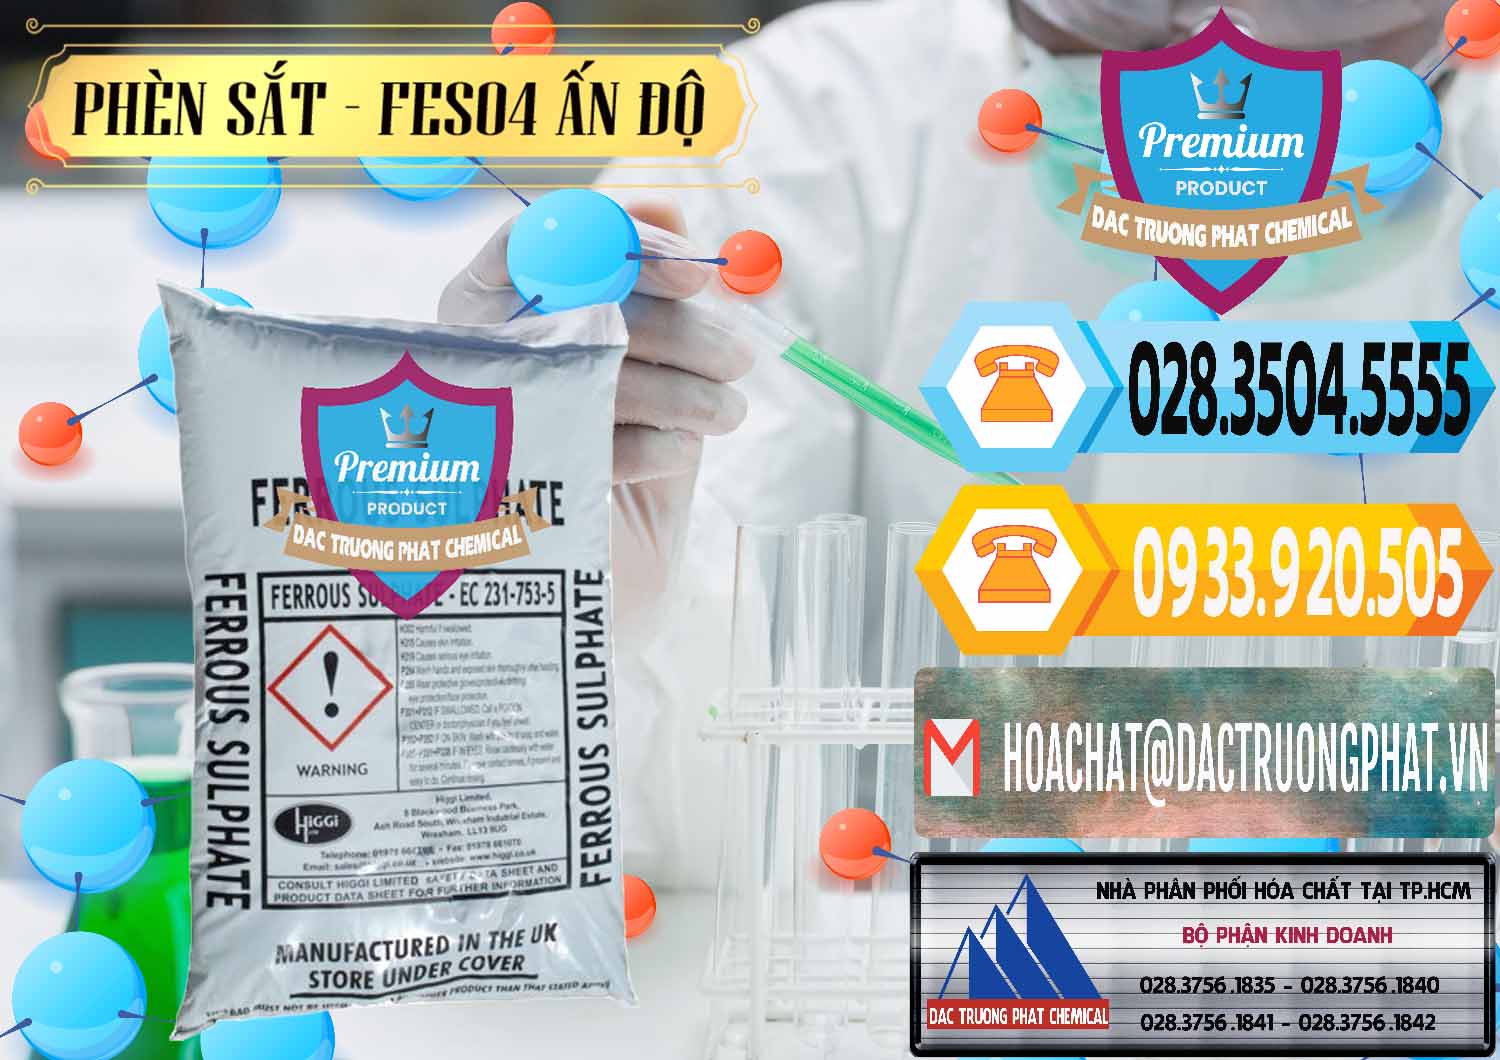 Nơi chuyên phân phối & bán Phèn Sắt - FeSO4.7H2O Ấn Độ India - 0354 - Công ty cung cấp & kinh doanh hóa chất tại TP.HCM - hoachattayrua.net